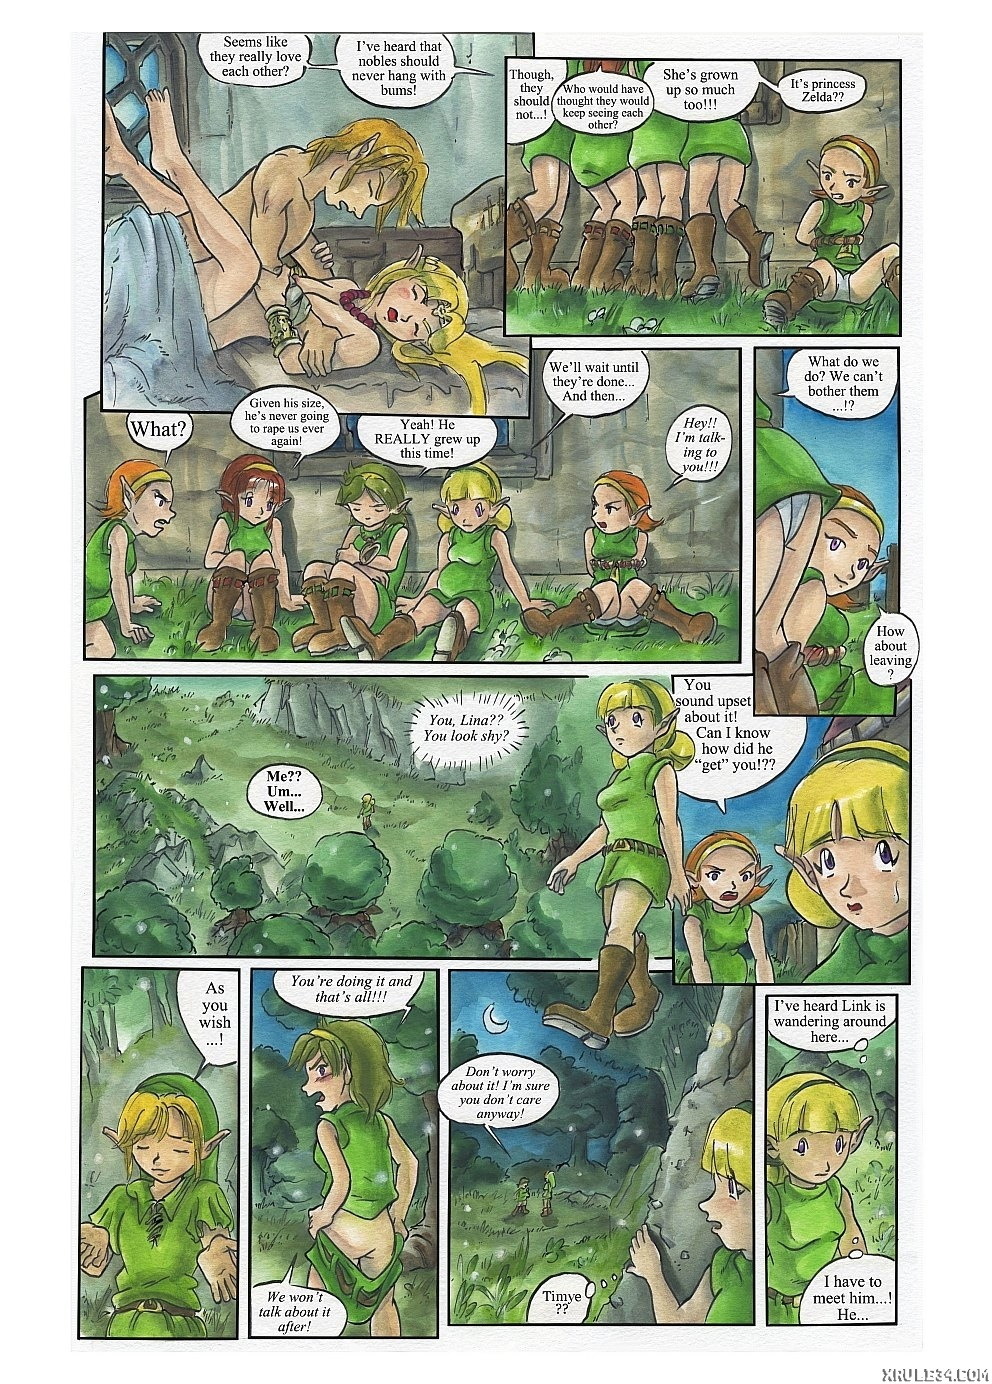 Bad Zelda 2 - Page 3